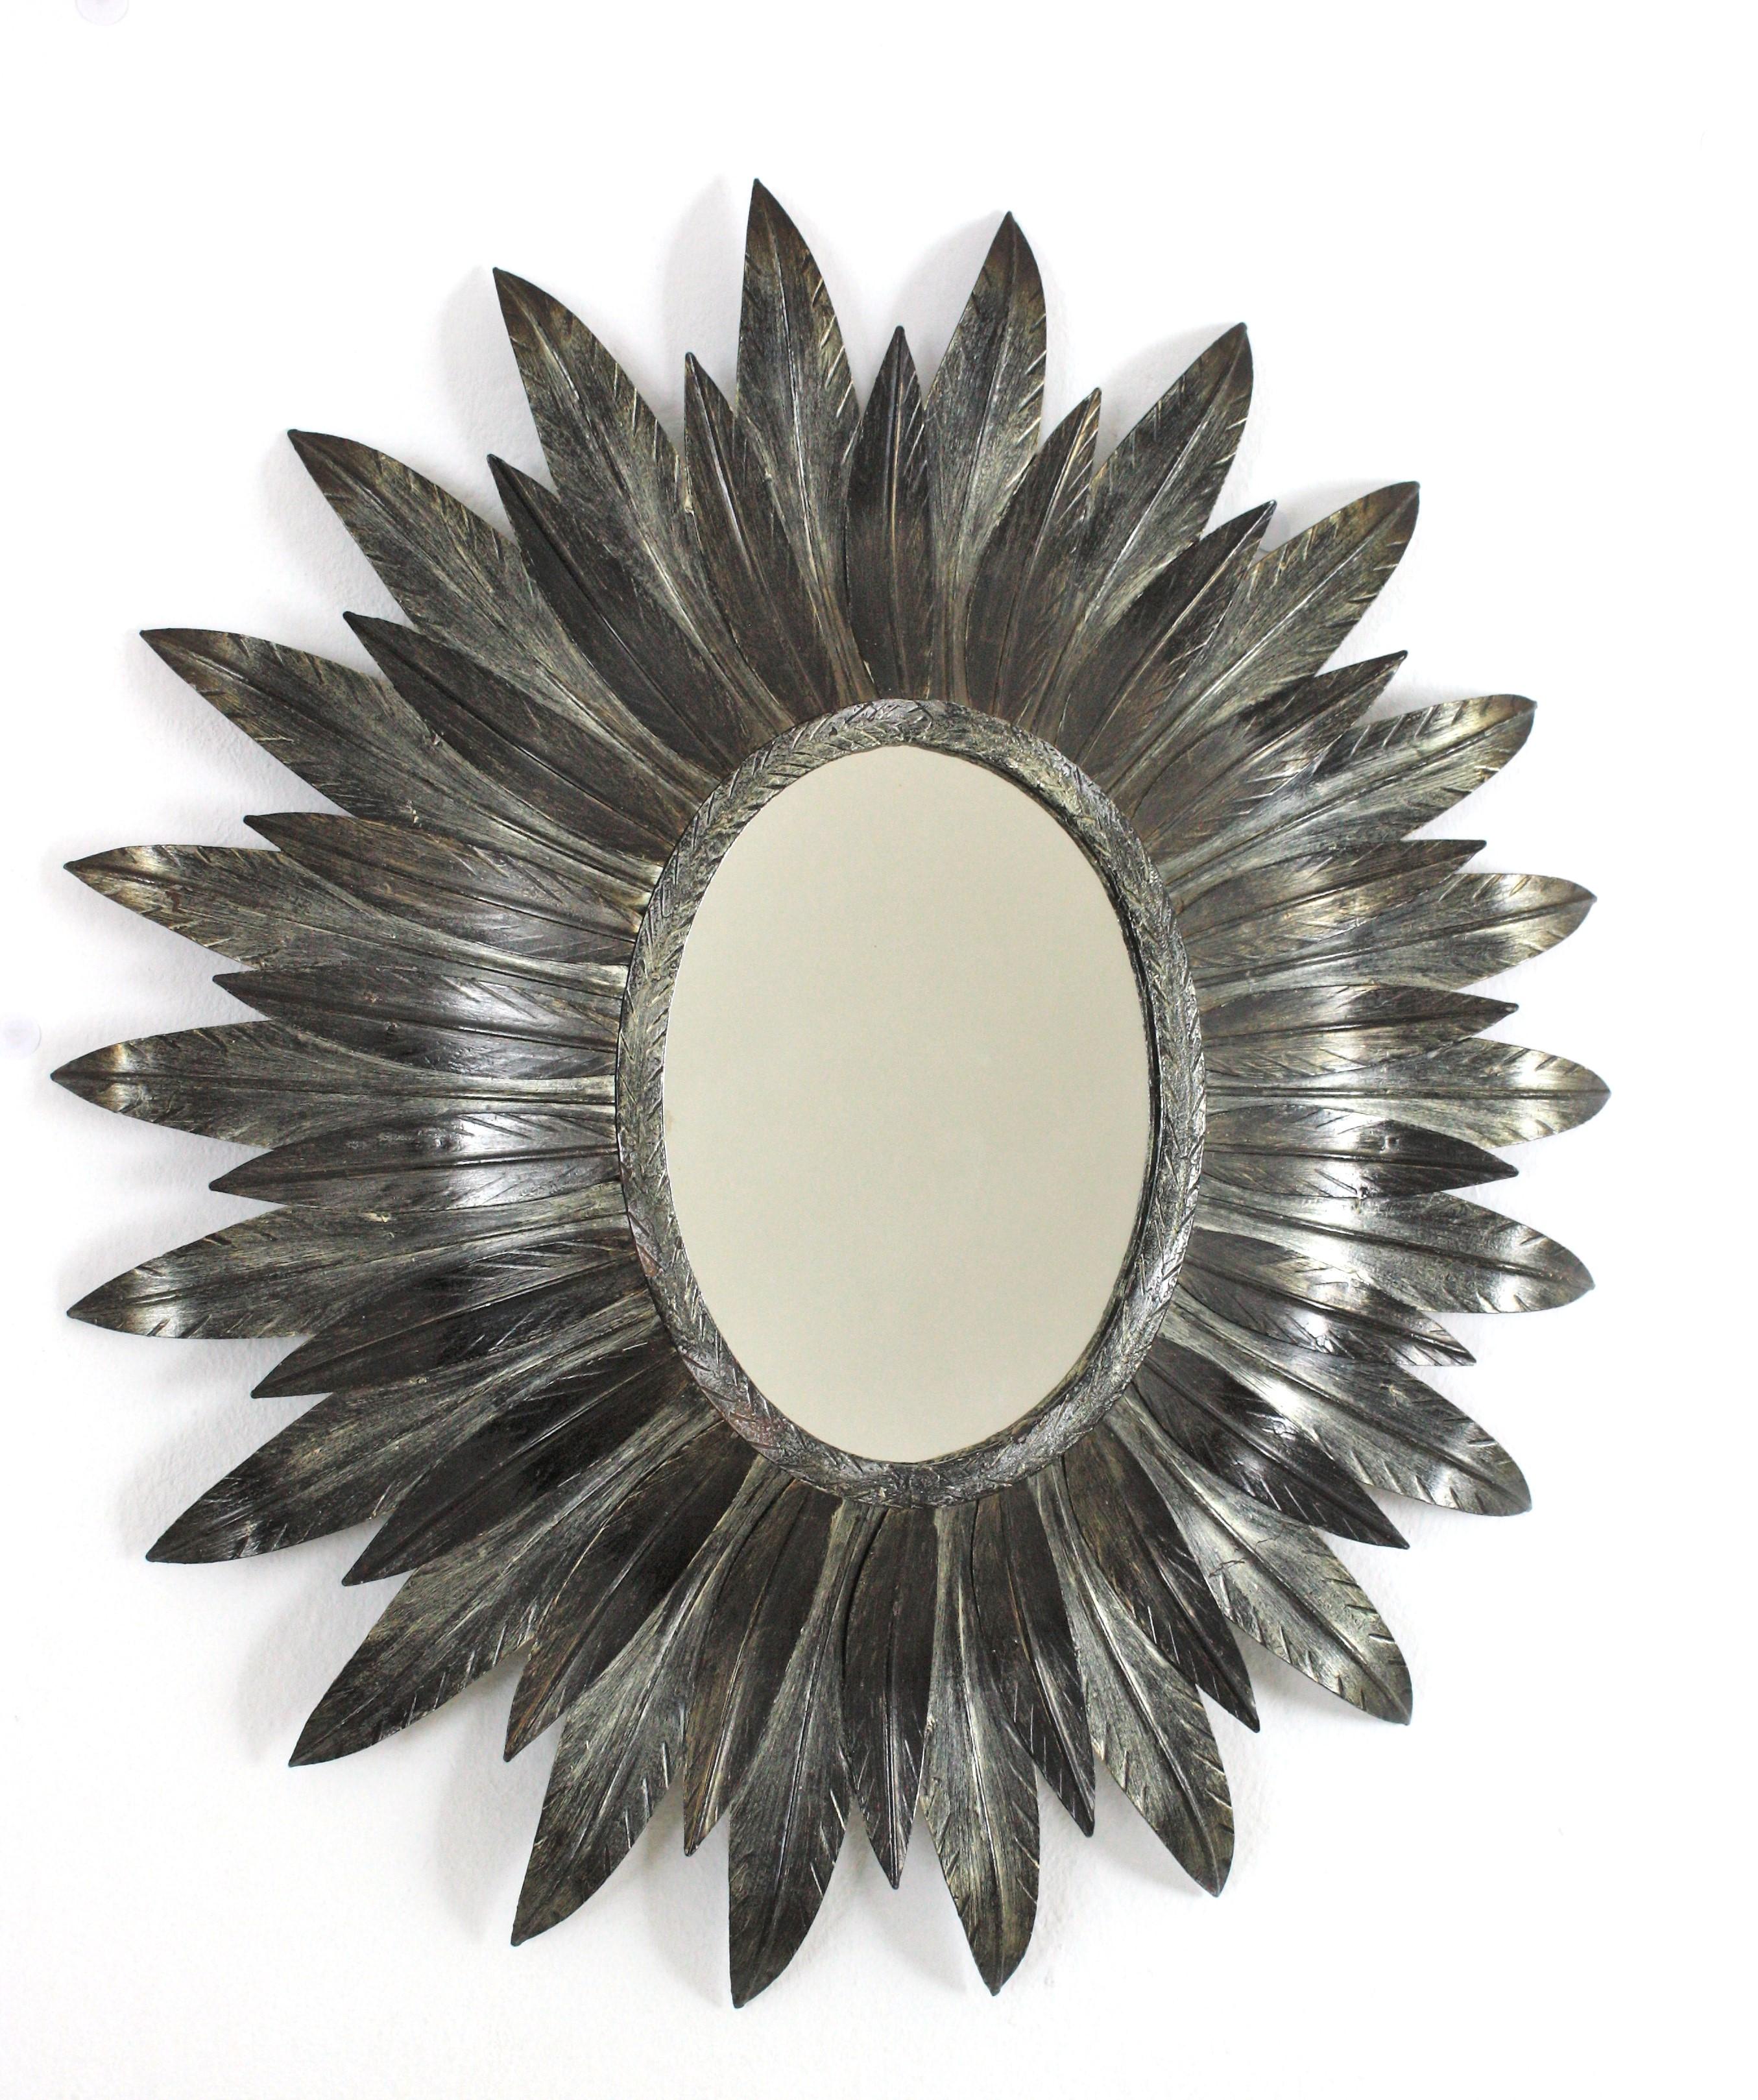 Miroir ovale en métal doré argenté Espagne, 1950-1960.
Ce miroir mural ensoleillé présente un verre ovale encadré de feuilles courbes en métal argenté, disponible en deux tailles.
Magnifiquement fabriqué à la main. Il présente une belle patine